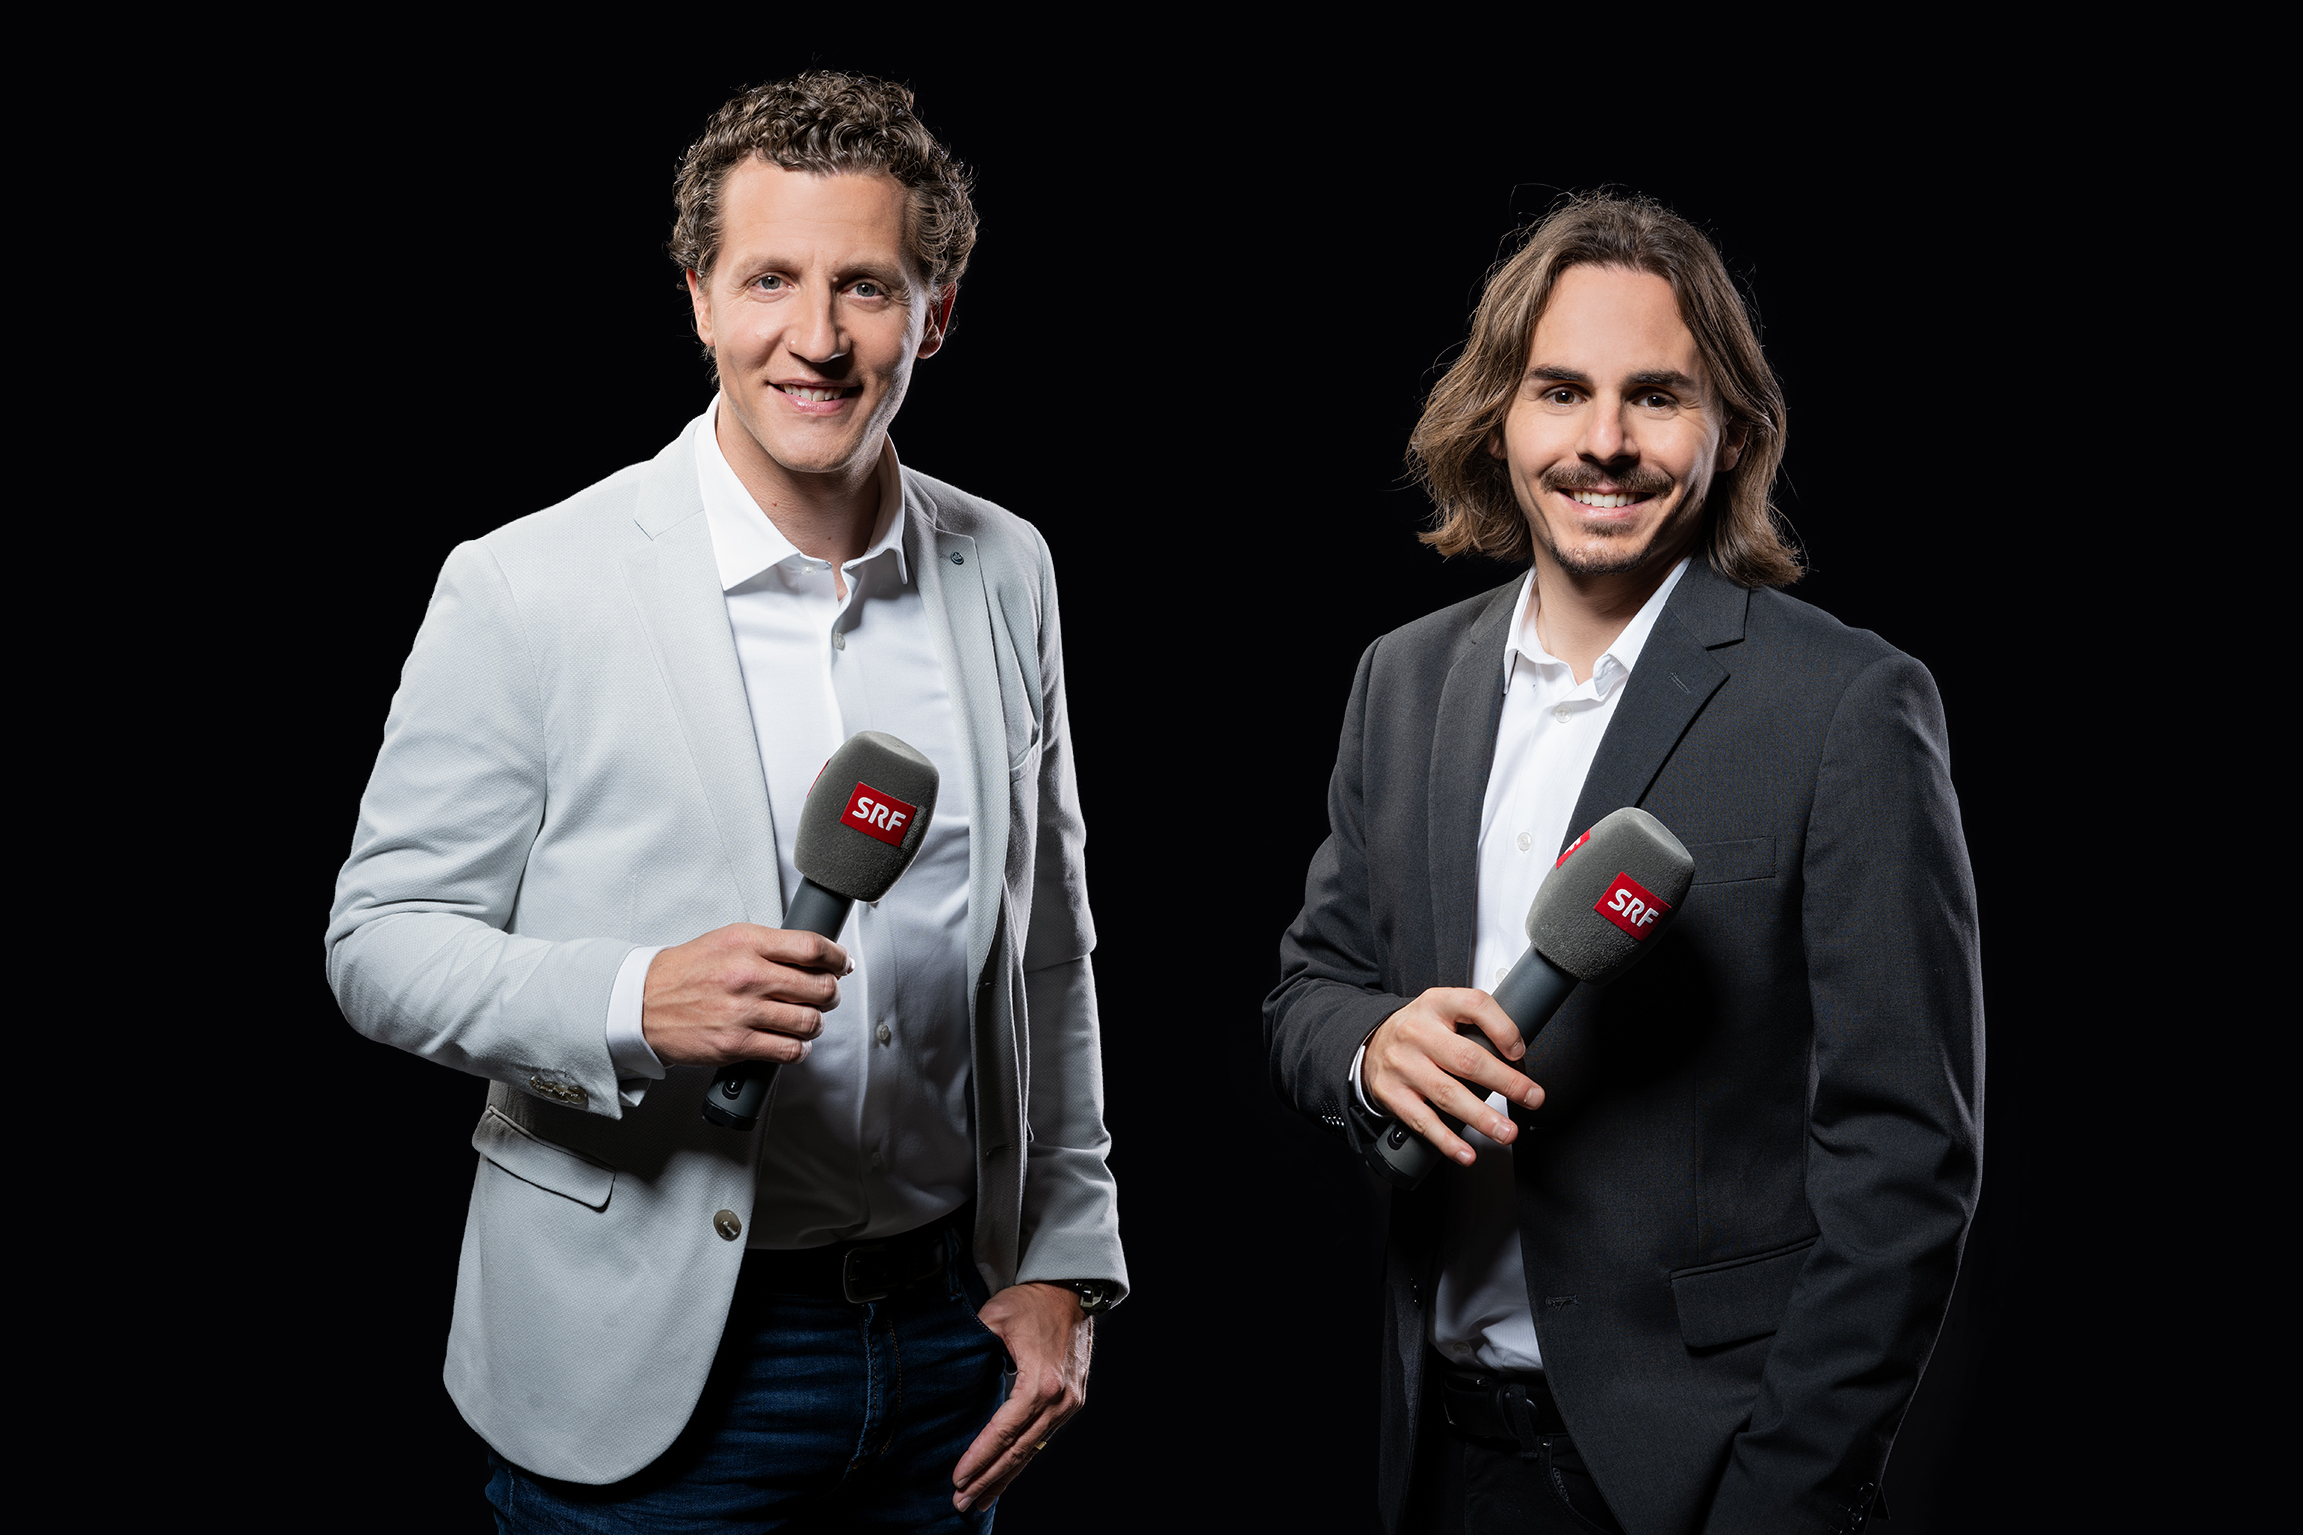 Super League Marco Wölfli und Kay Voser werden SRF-Experten - Medienportal 